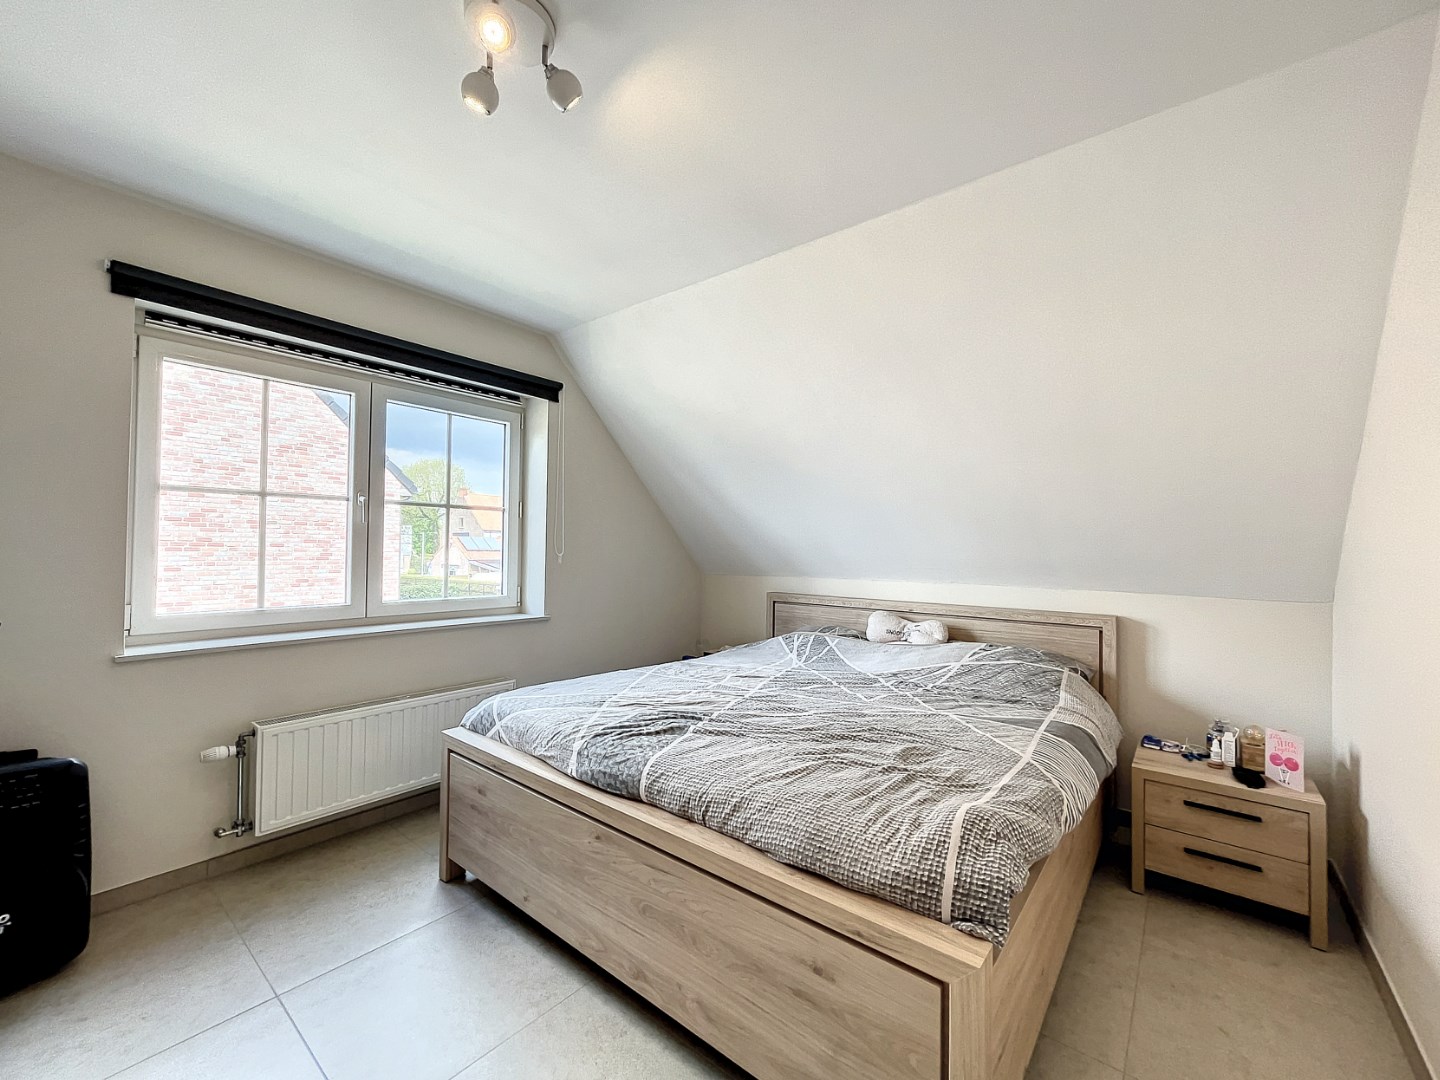 Moderne half open bebouwing met 3 slaapkamers in Adegem (Maldegem) - bouwjaar 2020 